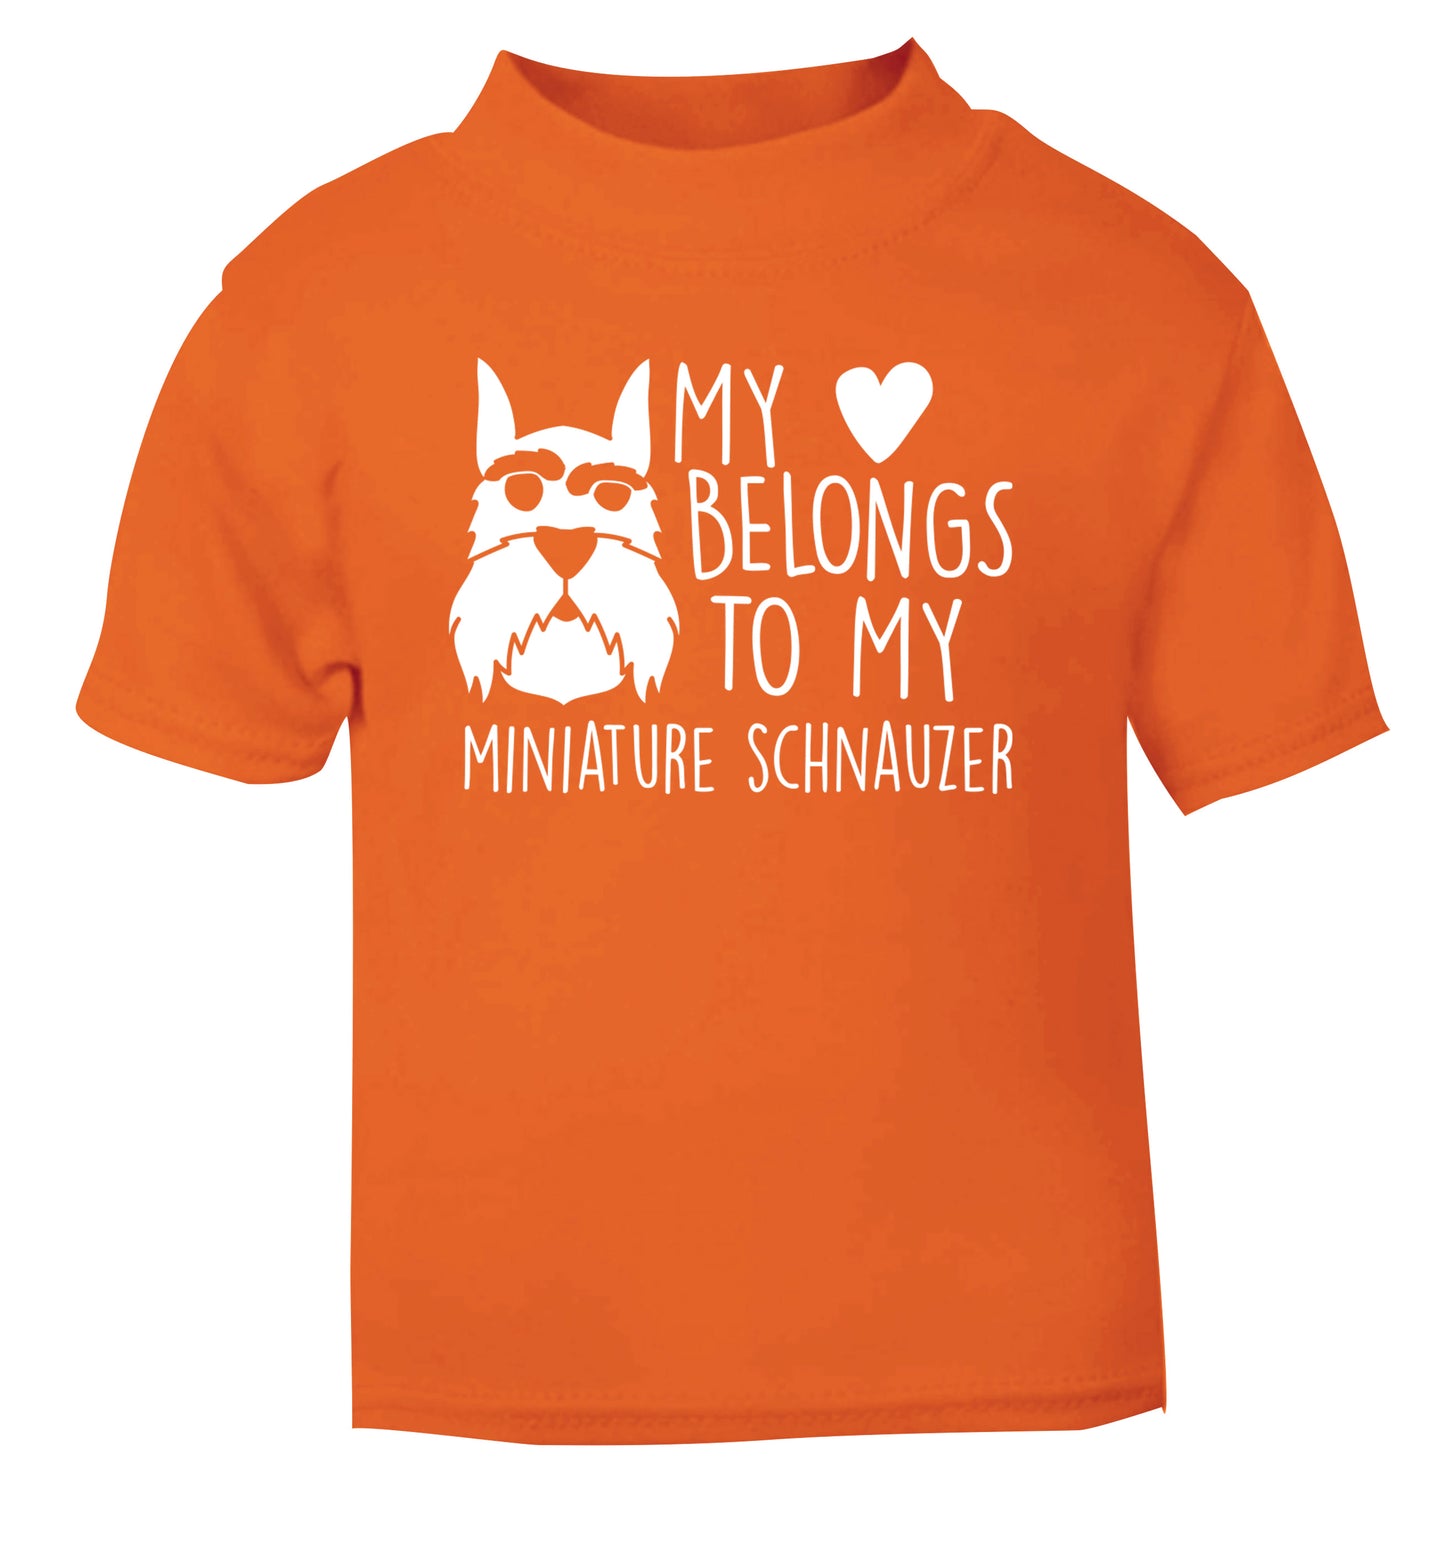 My heart belongs to my miniature schnauzer orange Baby Toddler Tshirt 2 Years